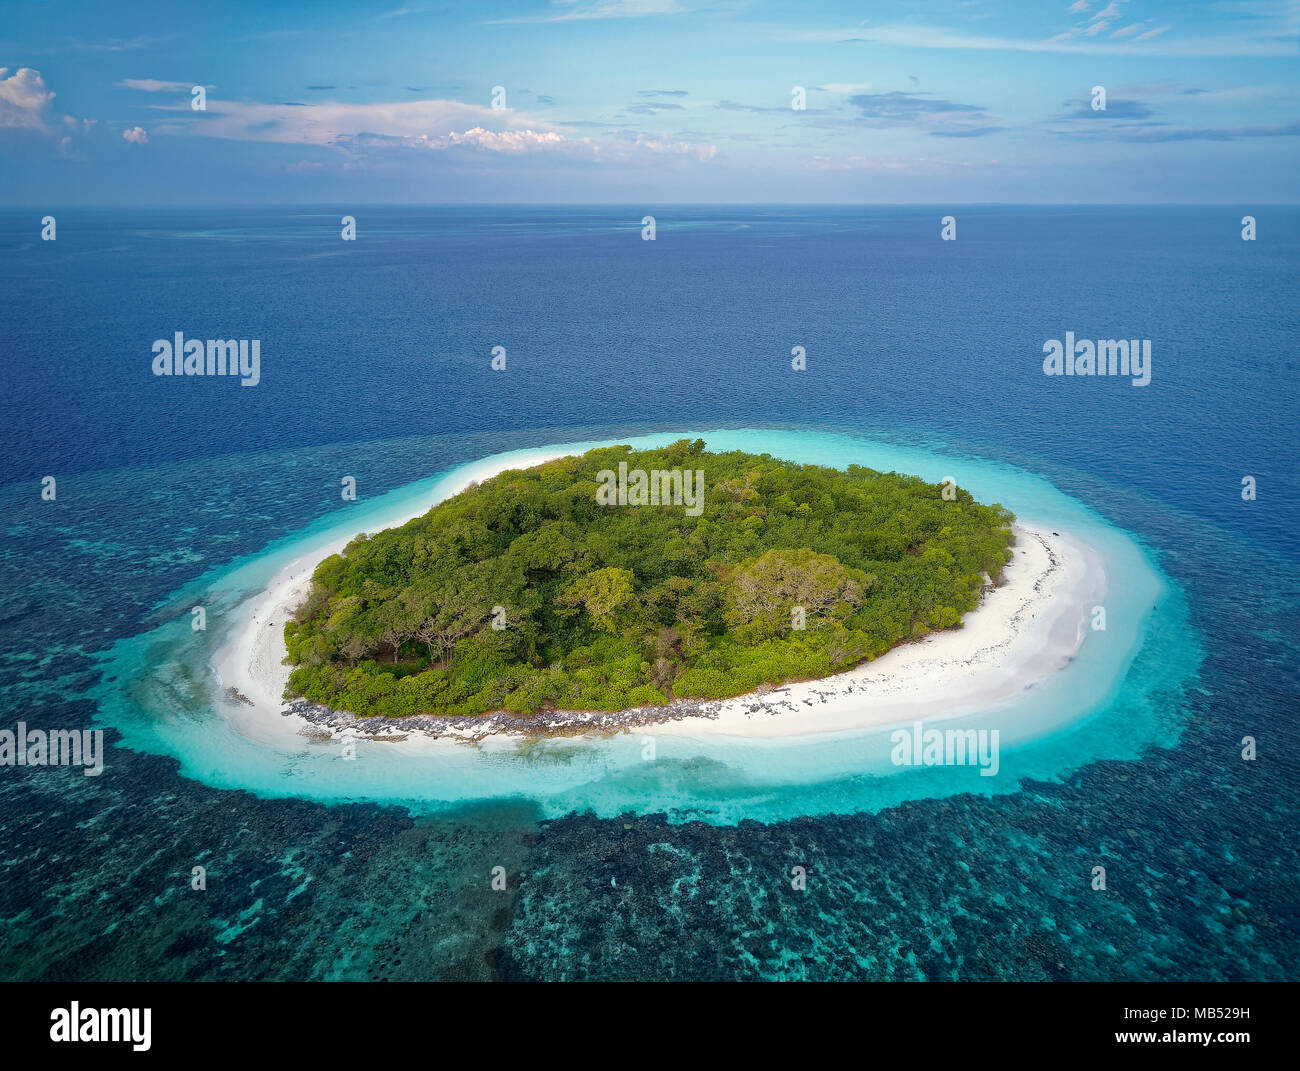 Deshabitada isla verde con arbustos, playa todo alrededor, arrecifes de coral mar adentro, Ari ATOLL, Maldivas, Océano Índico Foto de stock